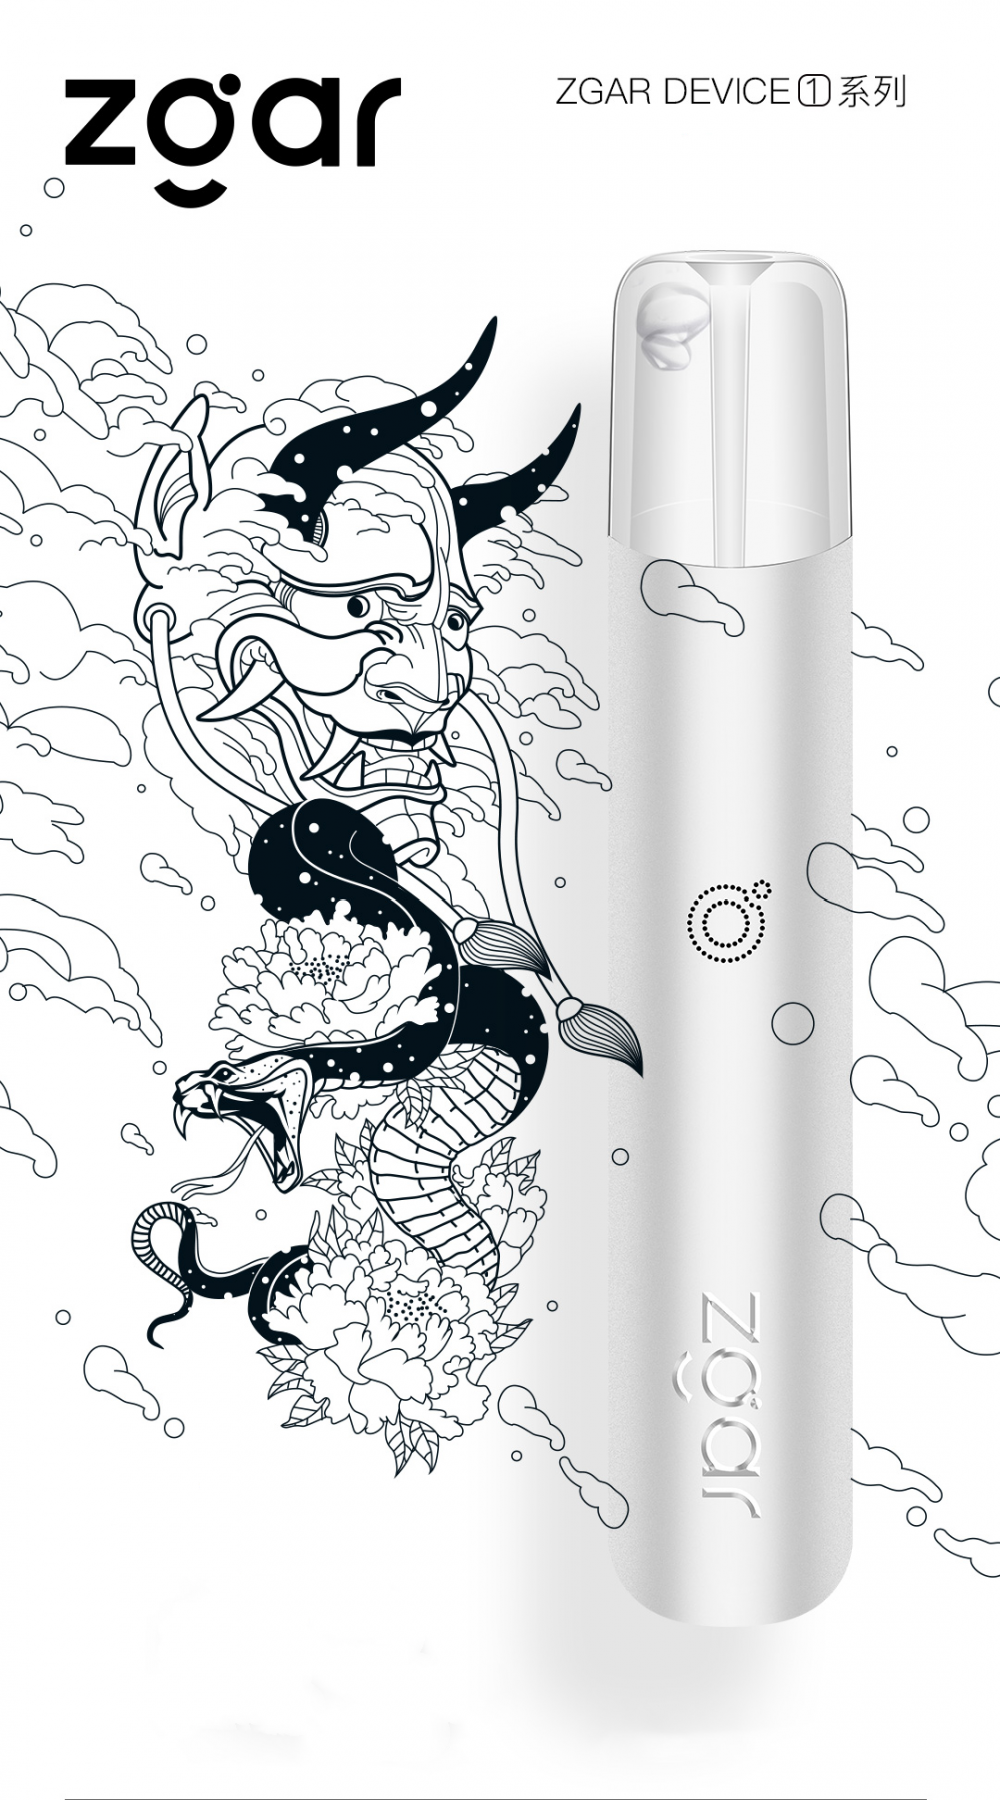 New Released vape pen e-cigarette atomizer device